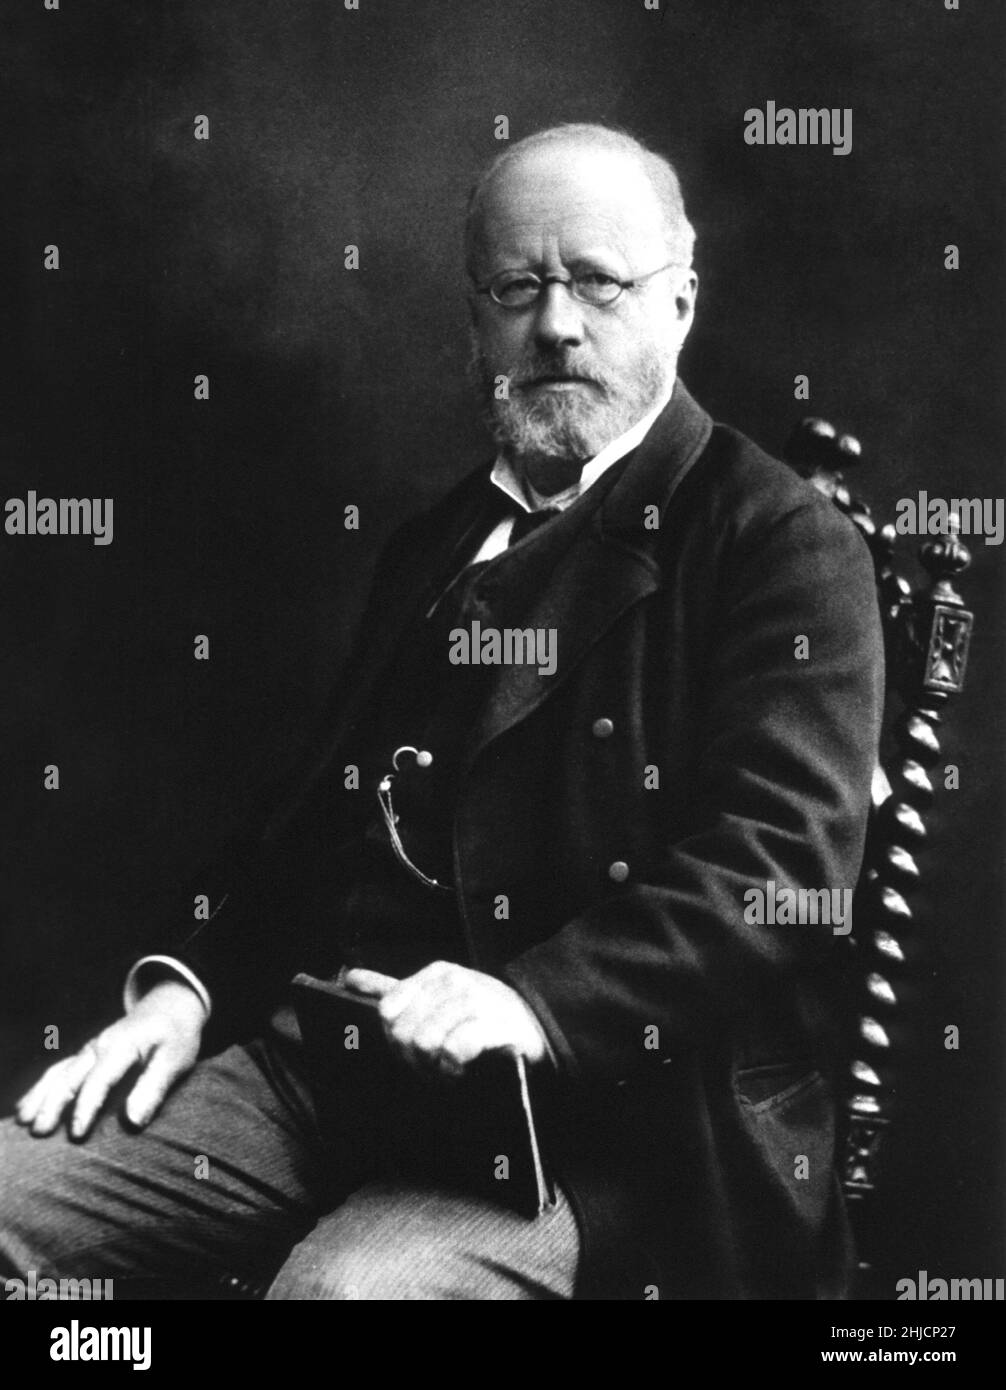 Edwin Klebs (1834-1913) war ein schweizerisch-deutscher Mikrobiologe, der für seine Arbeiten zu Infektionskrankheiten bekannt war. 1884 identifizierte er als erster (mit Friedrich L√∂ffler) ein Bakterium, das Diphtherie verursacht, das damals als Klebs-L√∂ffler Bacillus und heute als Corynebacterium diphtheriae bekannt war. Foto ca. 1898. Stockfoto